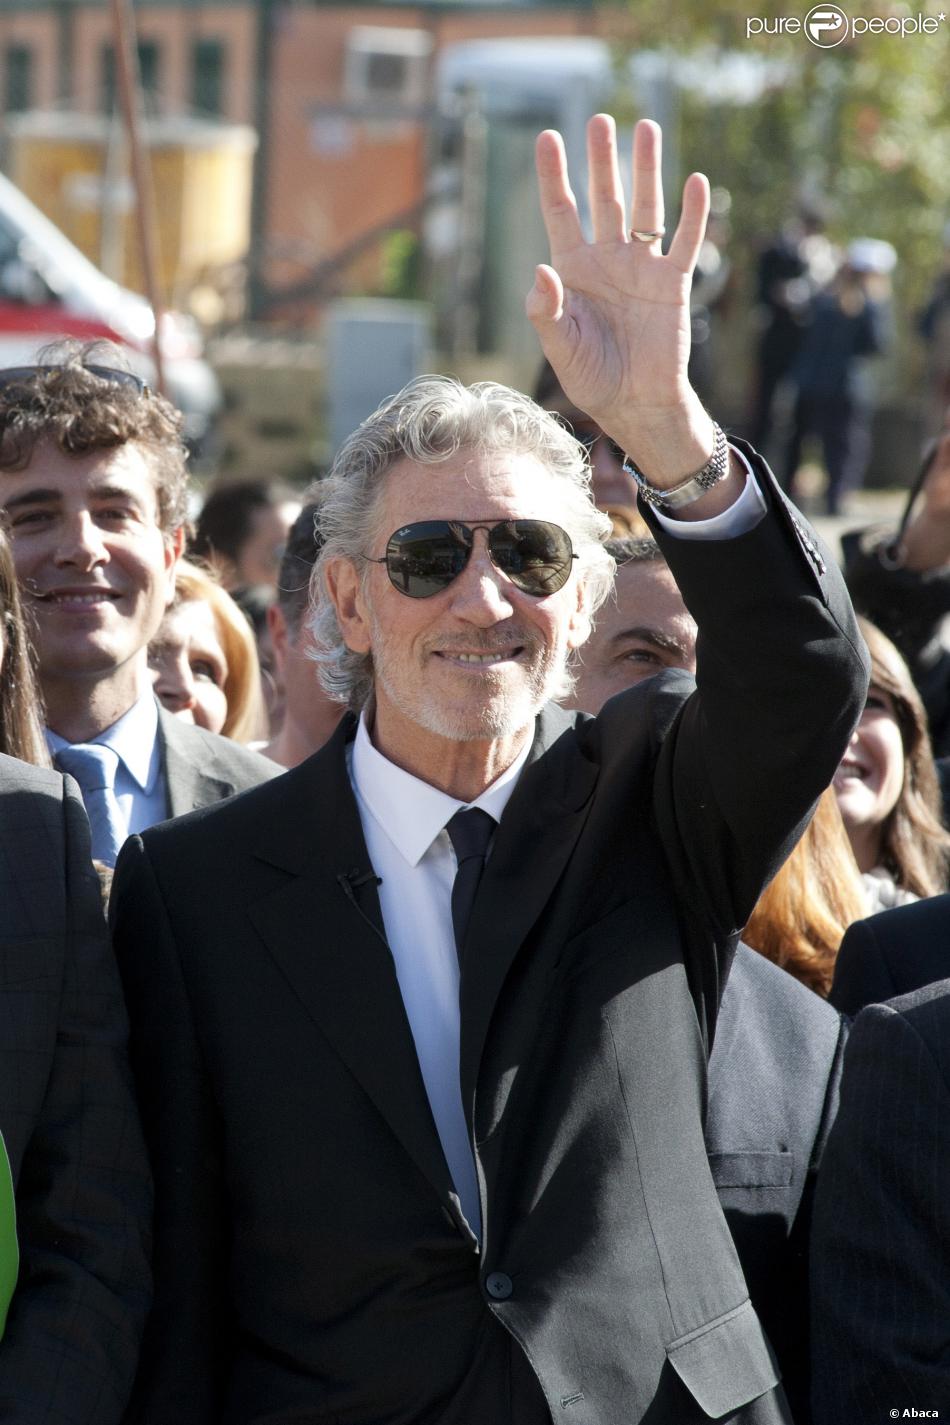 Roger Waters de Pink Floyd inaugure un monument consacré à son père Eric Fletcher Waters, le 18 février 2014, 70 ans jour pour jour après sa mort durant la Seconde Guerre mondiale, à Anzio en Italie.